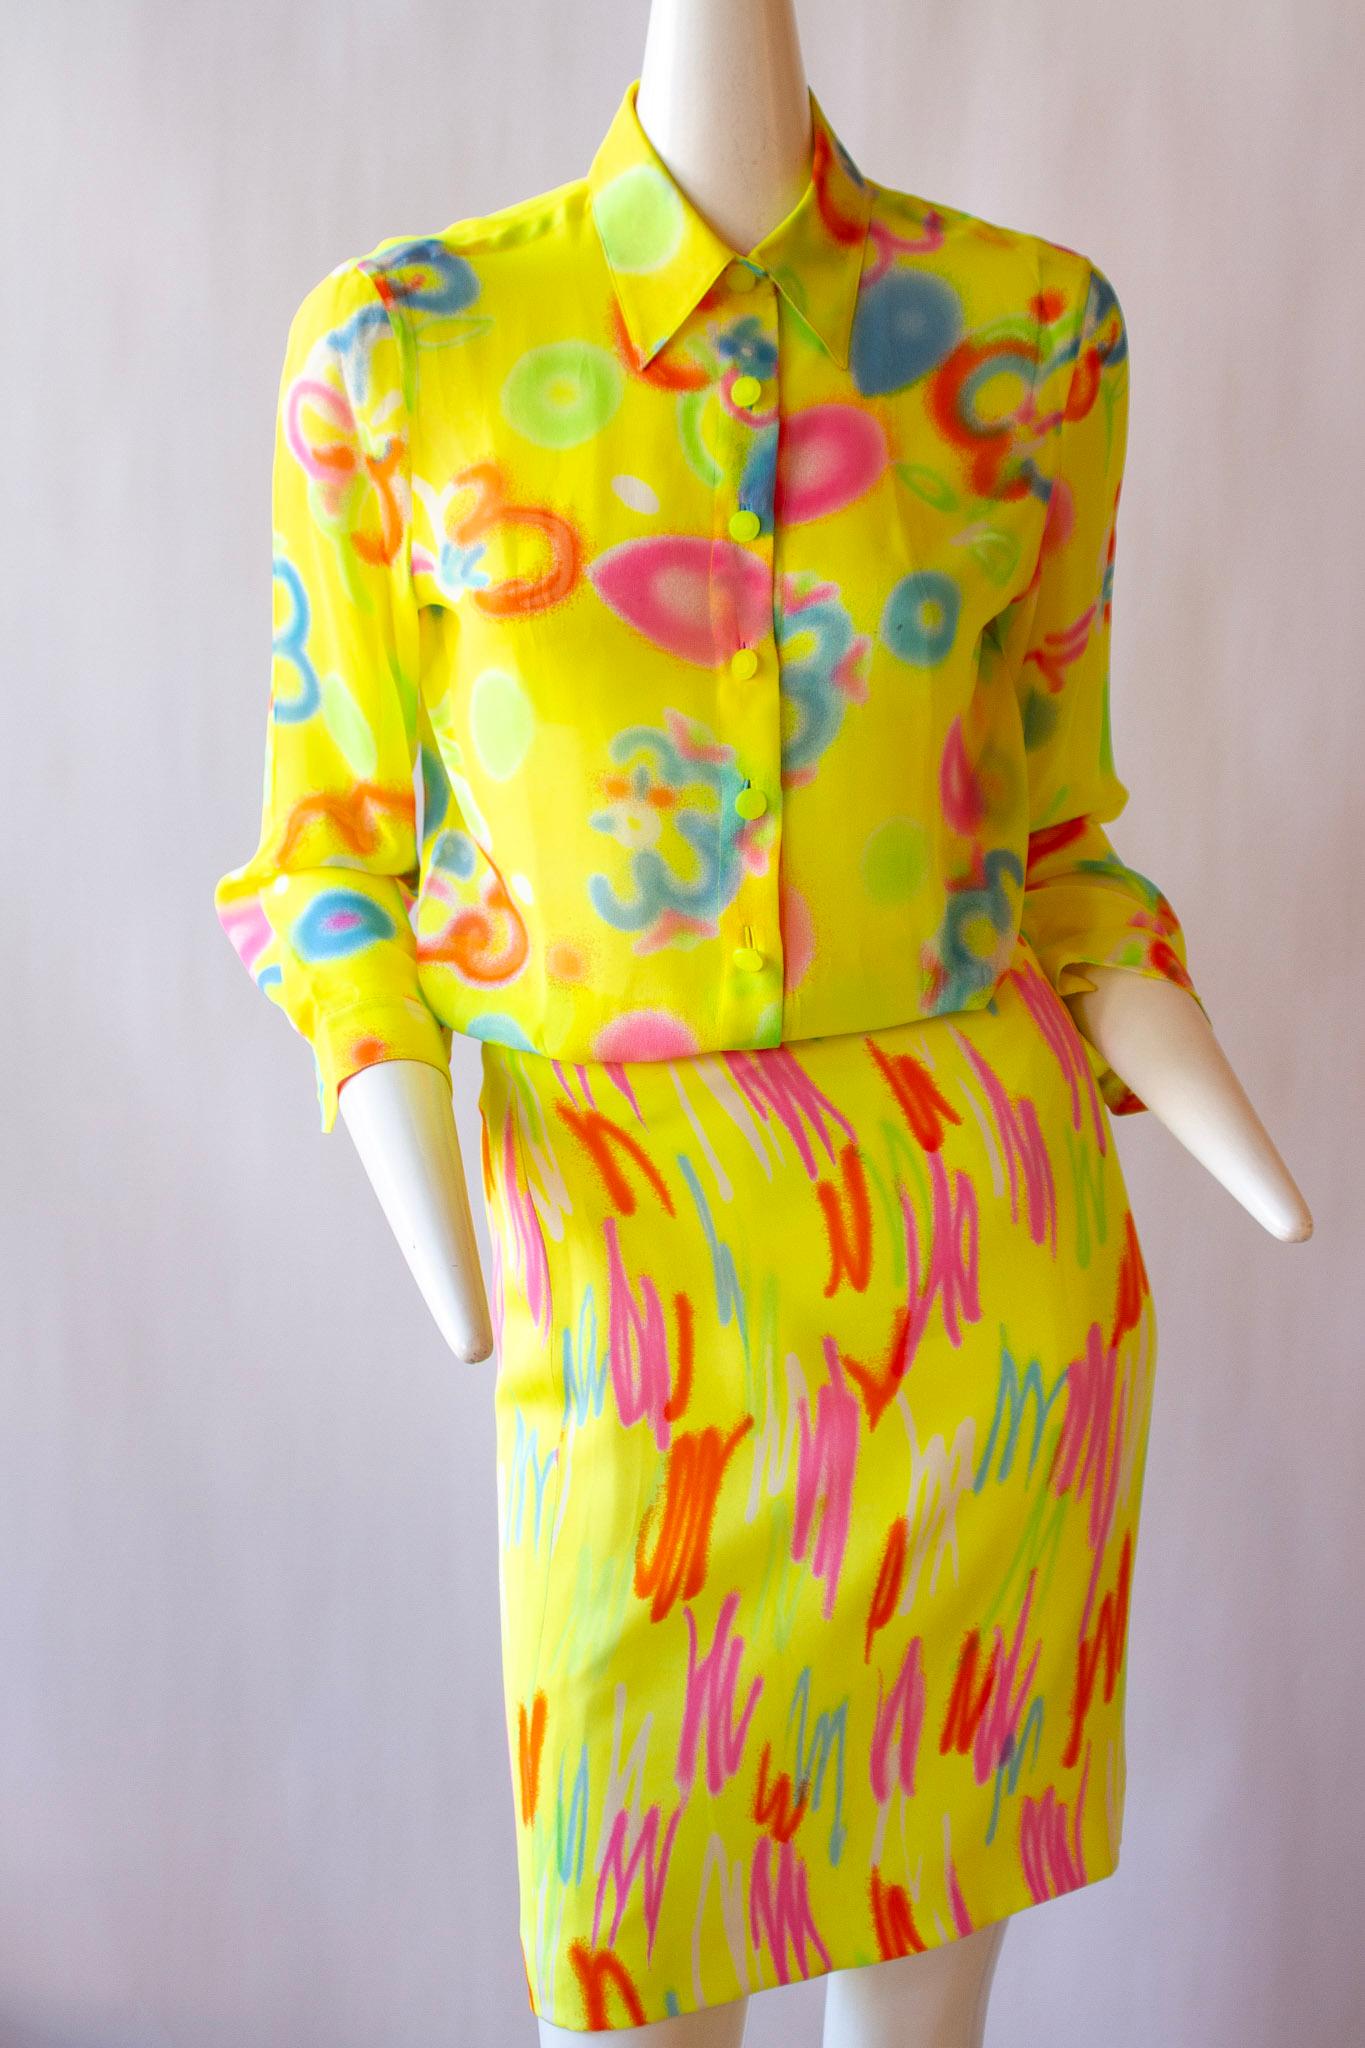 Tailleur jupe de couleur néon de Gianni Versace Couture qui figurait dans la collection de prêt-à-porter du printemps 1996. La veste et la robe sont toutes deux fabriquées à partir d'une soie merveilleusement douce, dans un motif abstrait saisissant